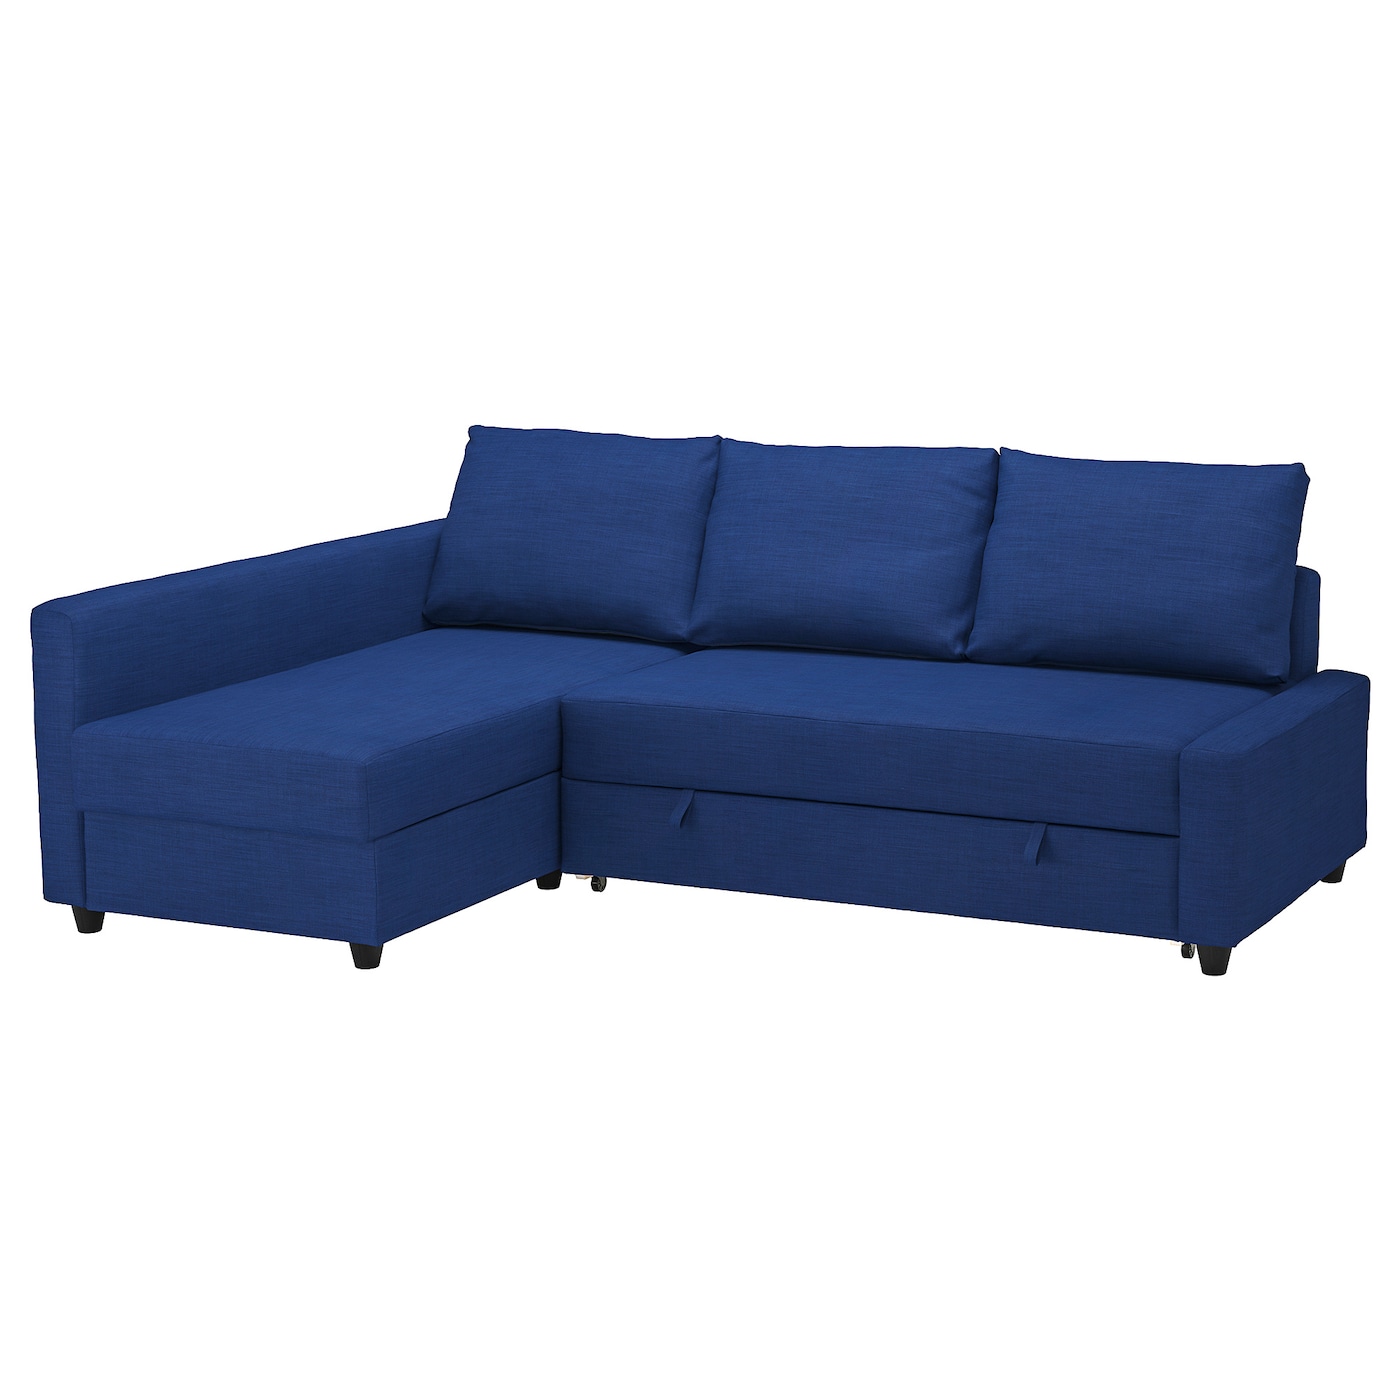 ФРИХЕТЕН Угловой диван-кровать + место для хранения, Скифтебо синий FRIHETEN IKEA цена и фото